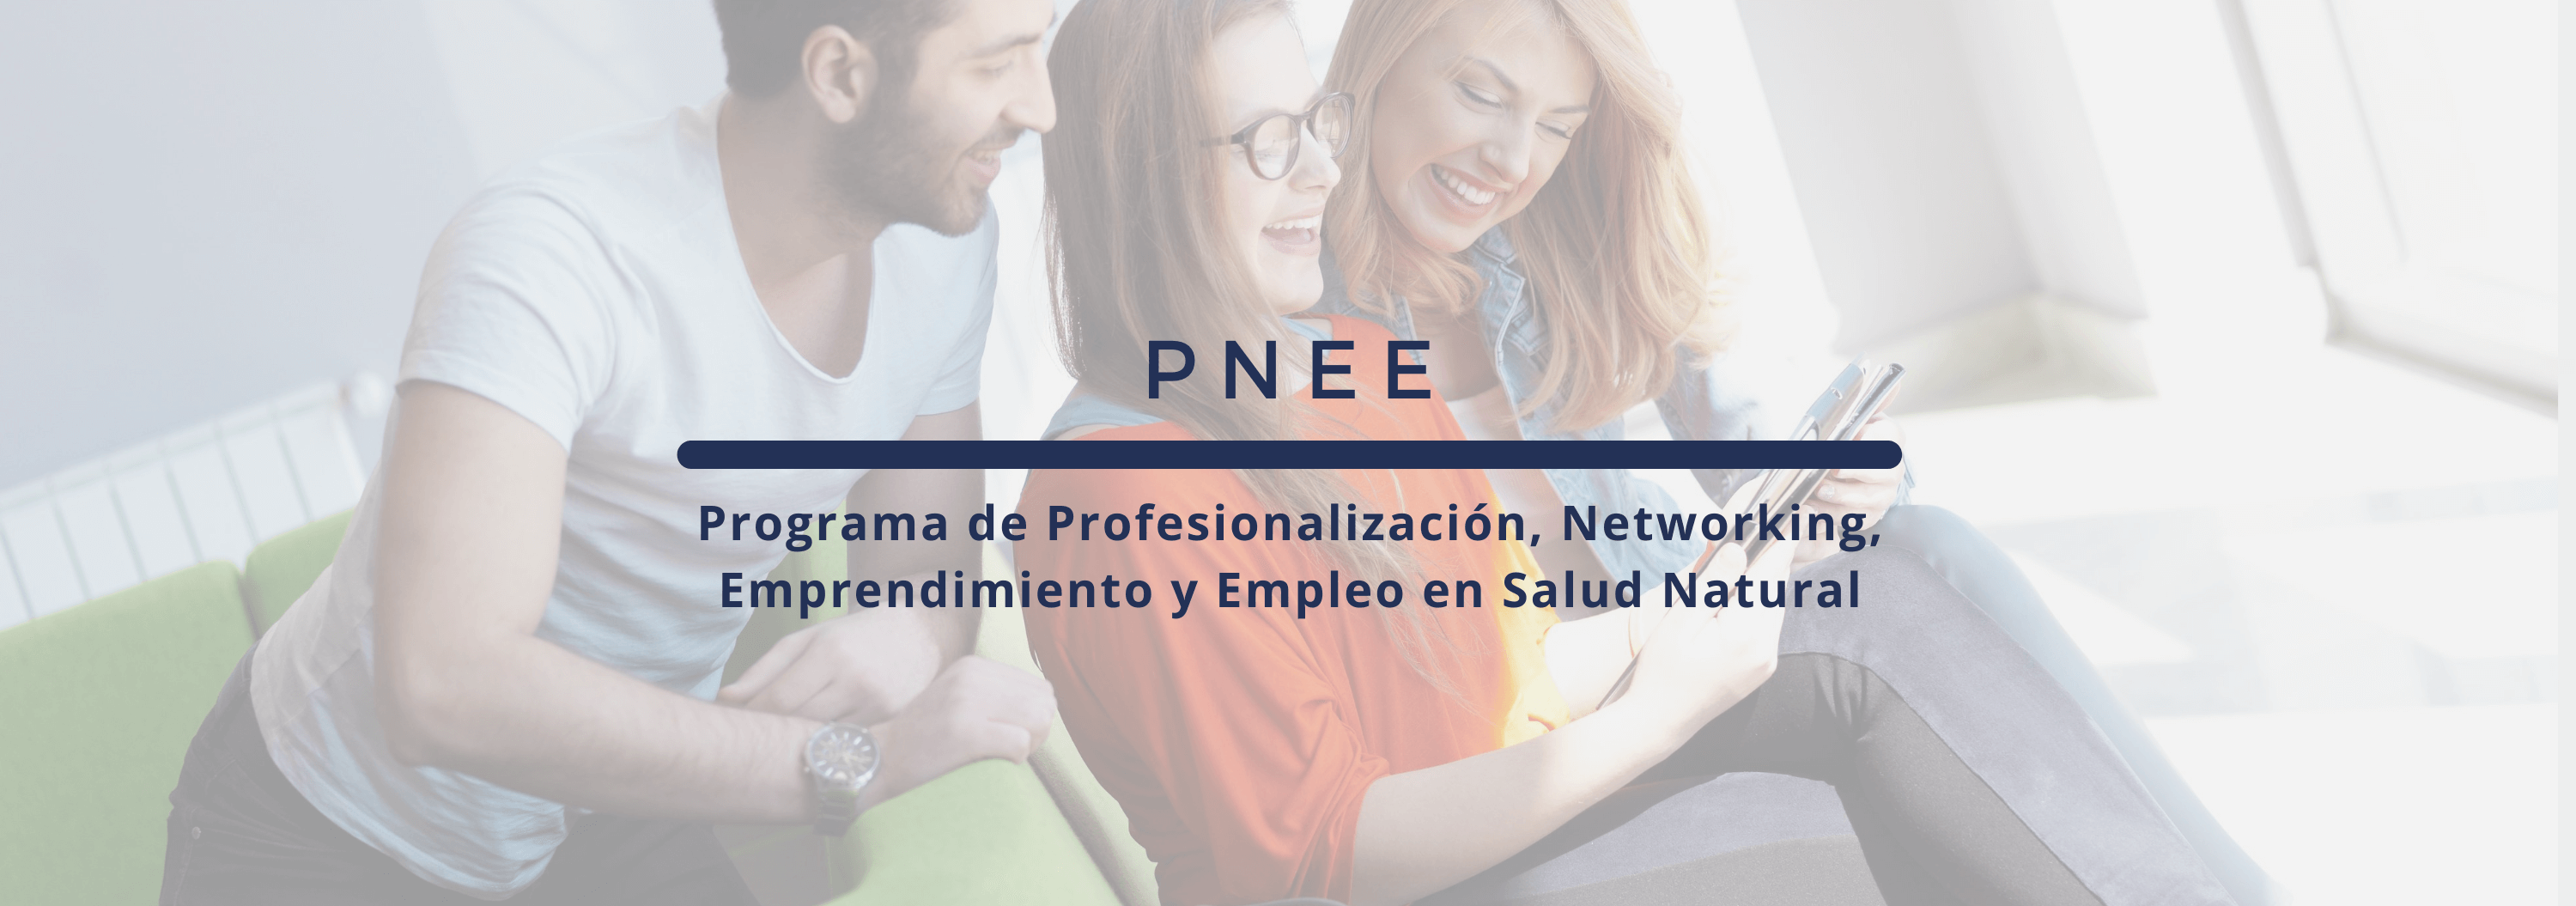 En este momento estás viendo Programa de Profesionalización, Networking, Emprendimiento y Empleo en Salud Natural.